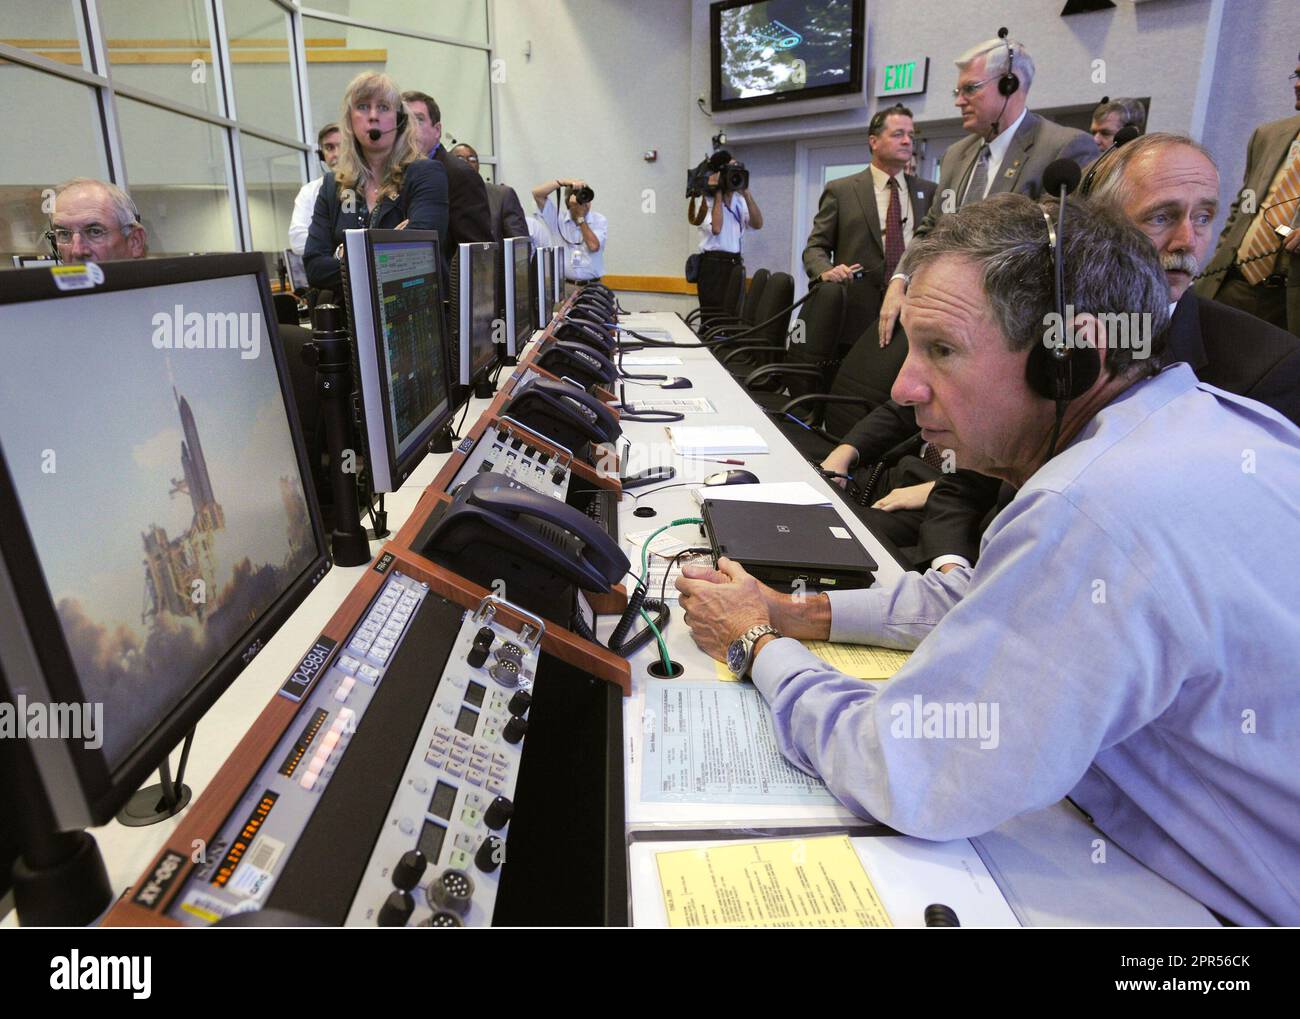 L'administrateur de la NASA, Michael Griffin, observe le lancement de la navette spatiale Discovery (STS-124) depuis le Centre de contrôle du lancement le samedi 31 mai 2008 au Centre spatial Kennedy de Cape Canaveral, en Floride, la navette s'est levée du tampon de lancement 39 A à 17 h 02 HAE. Crédit photo : (NASA/Bill Ingalls) Banque D'Images